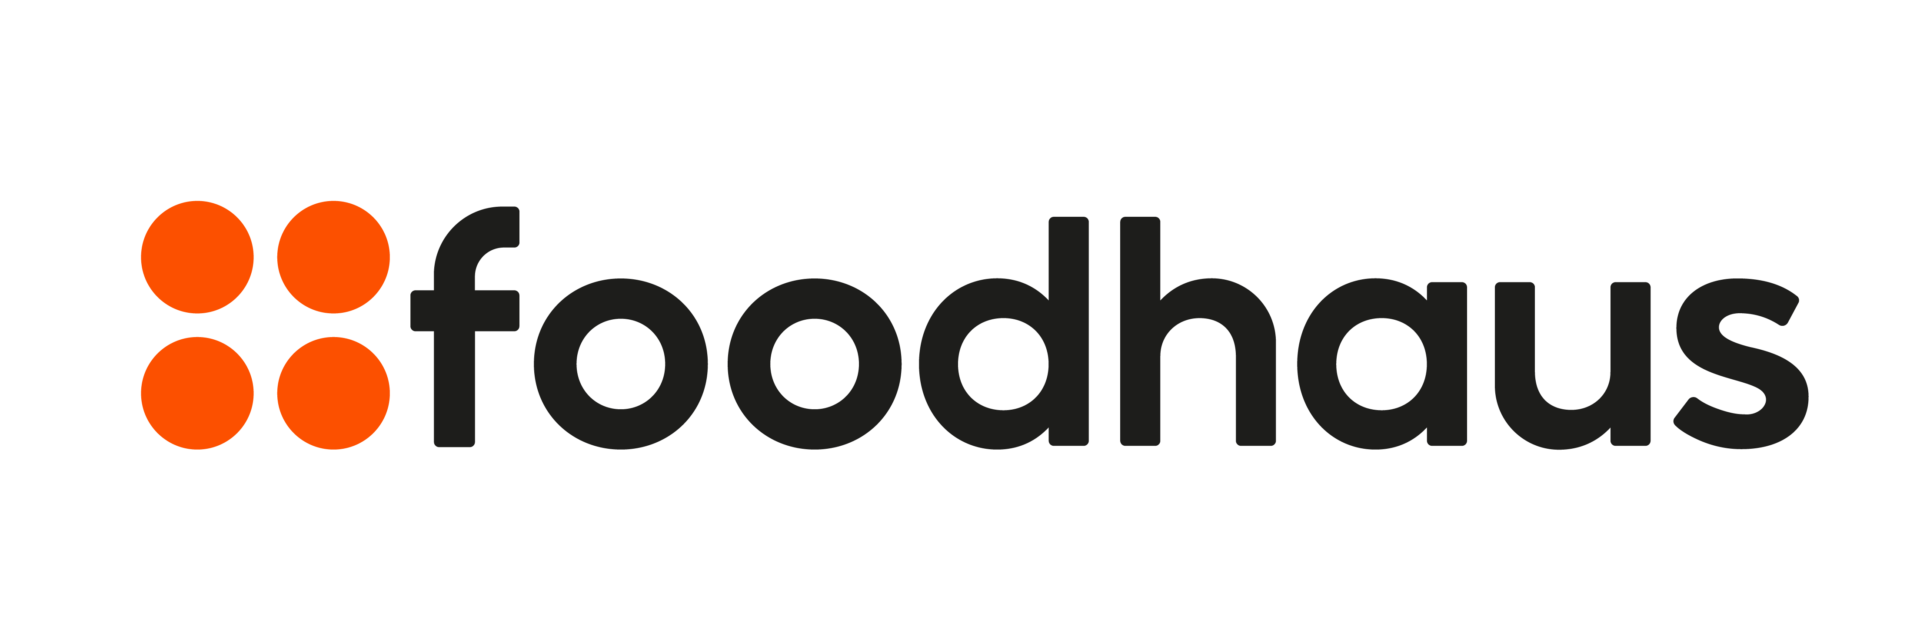 Foodhaus Logo Light Version 01